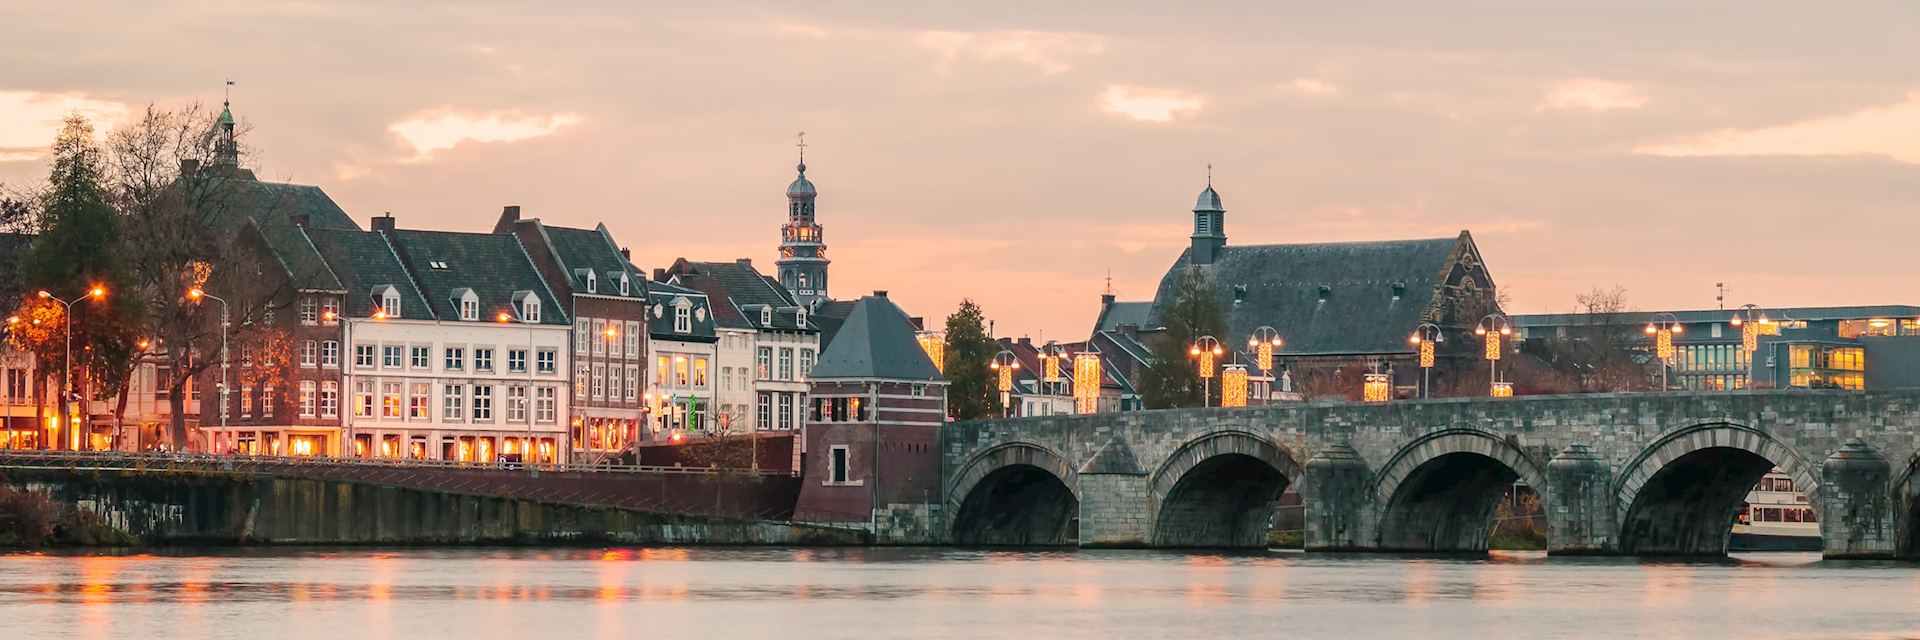 Bridge in Maastricht